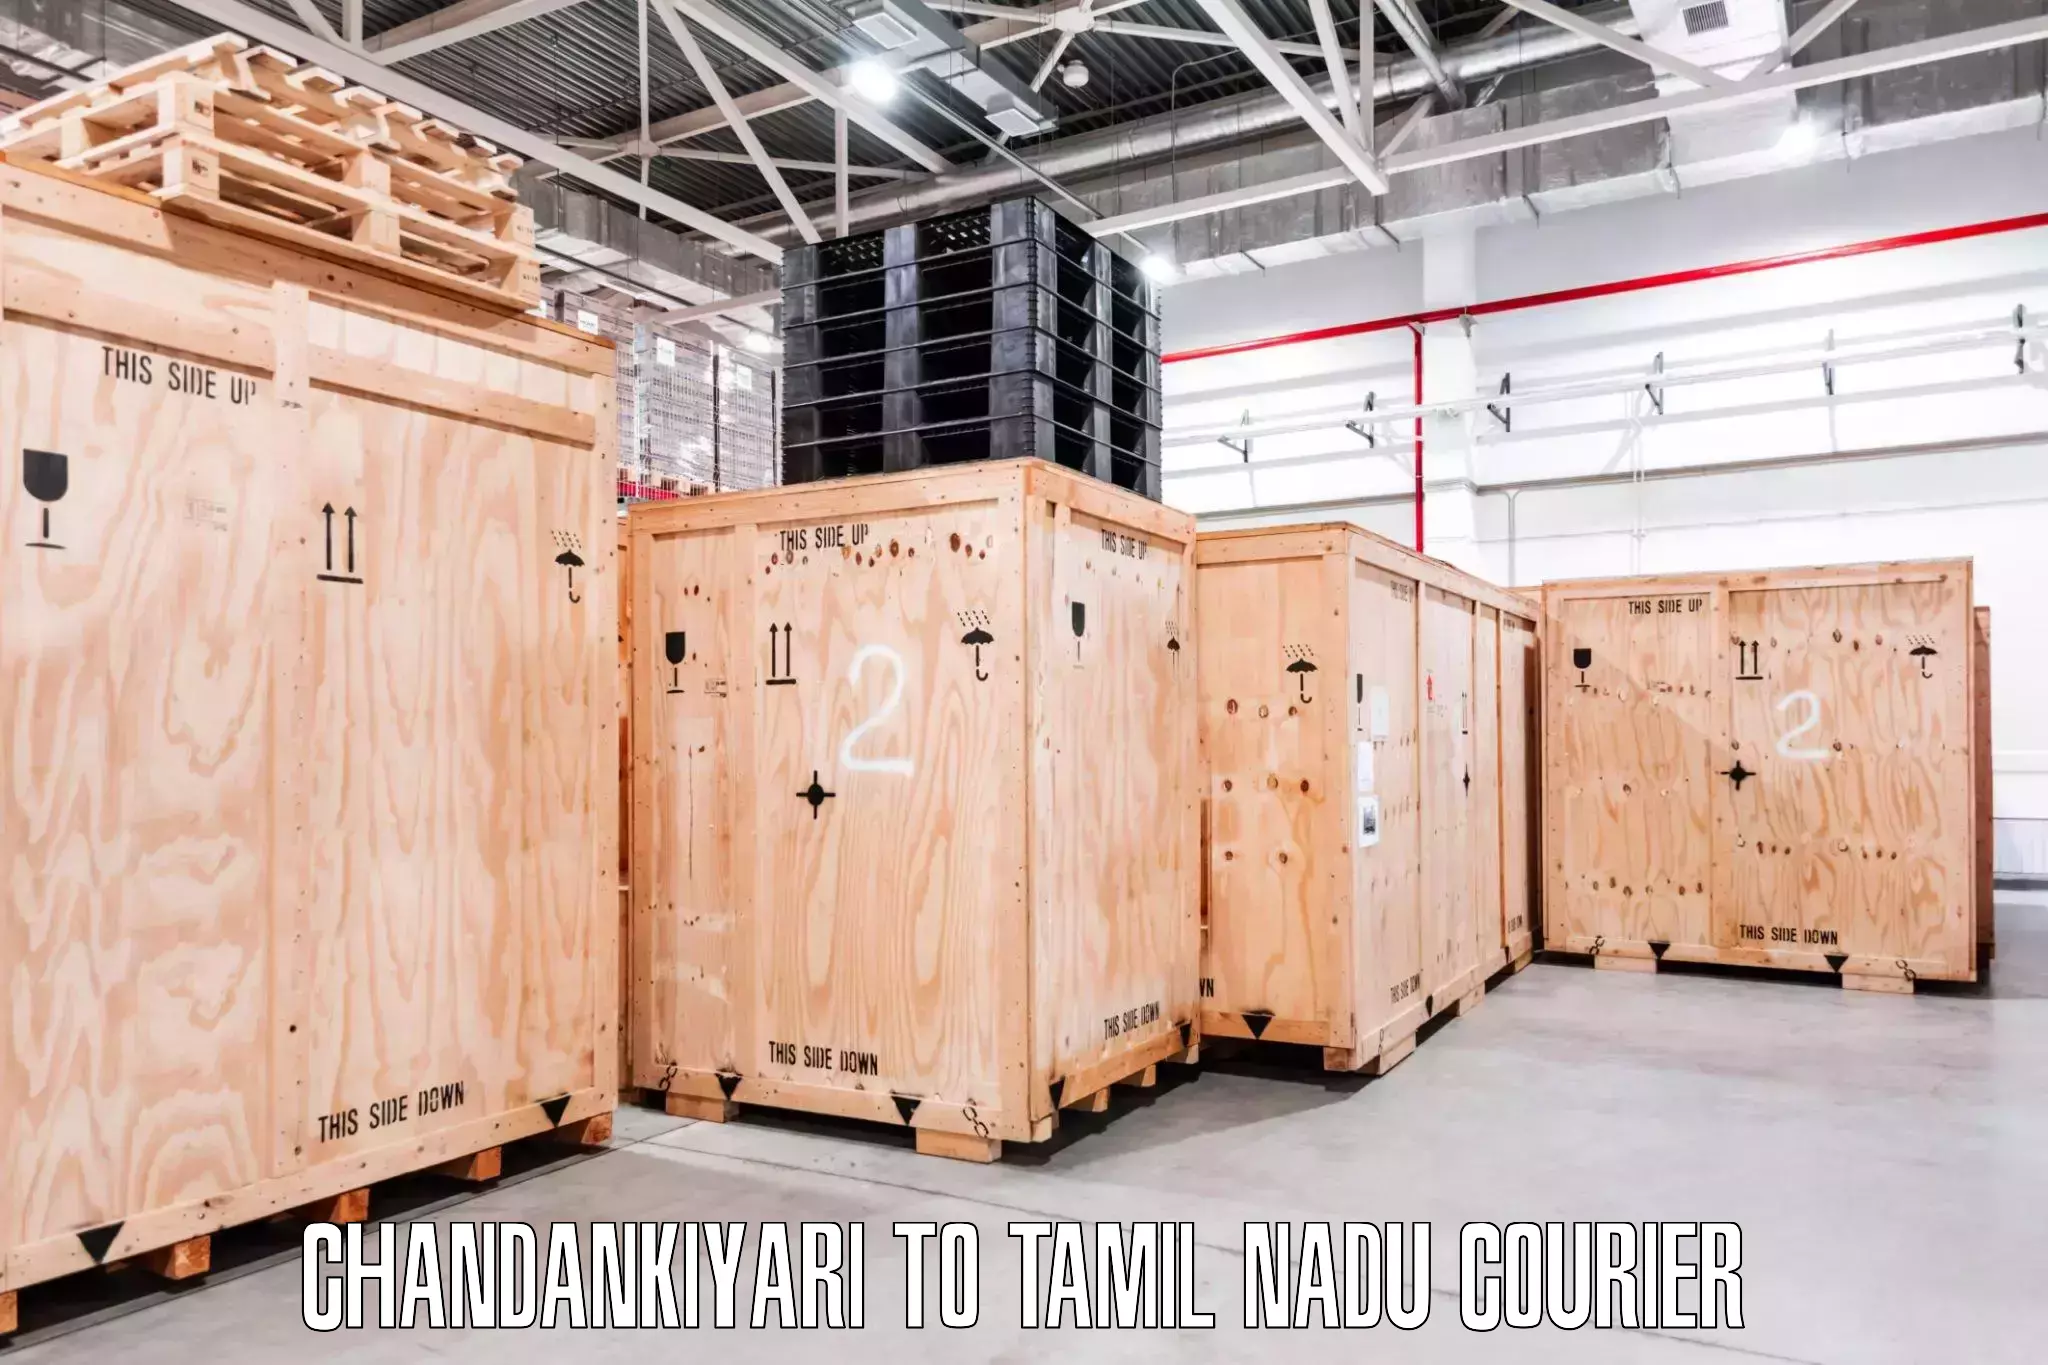 Skilled furniture transporters Chandankiyari to Erode